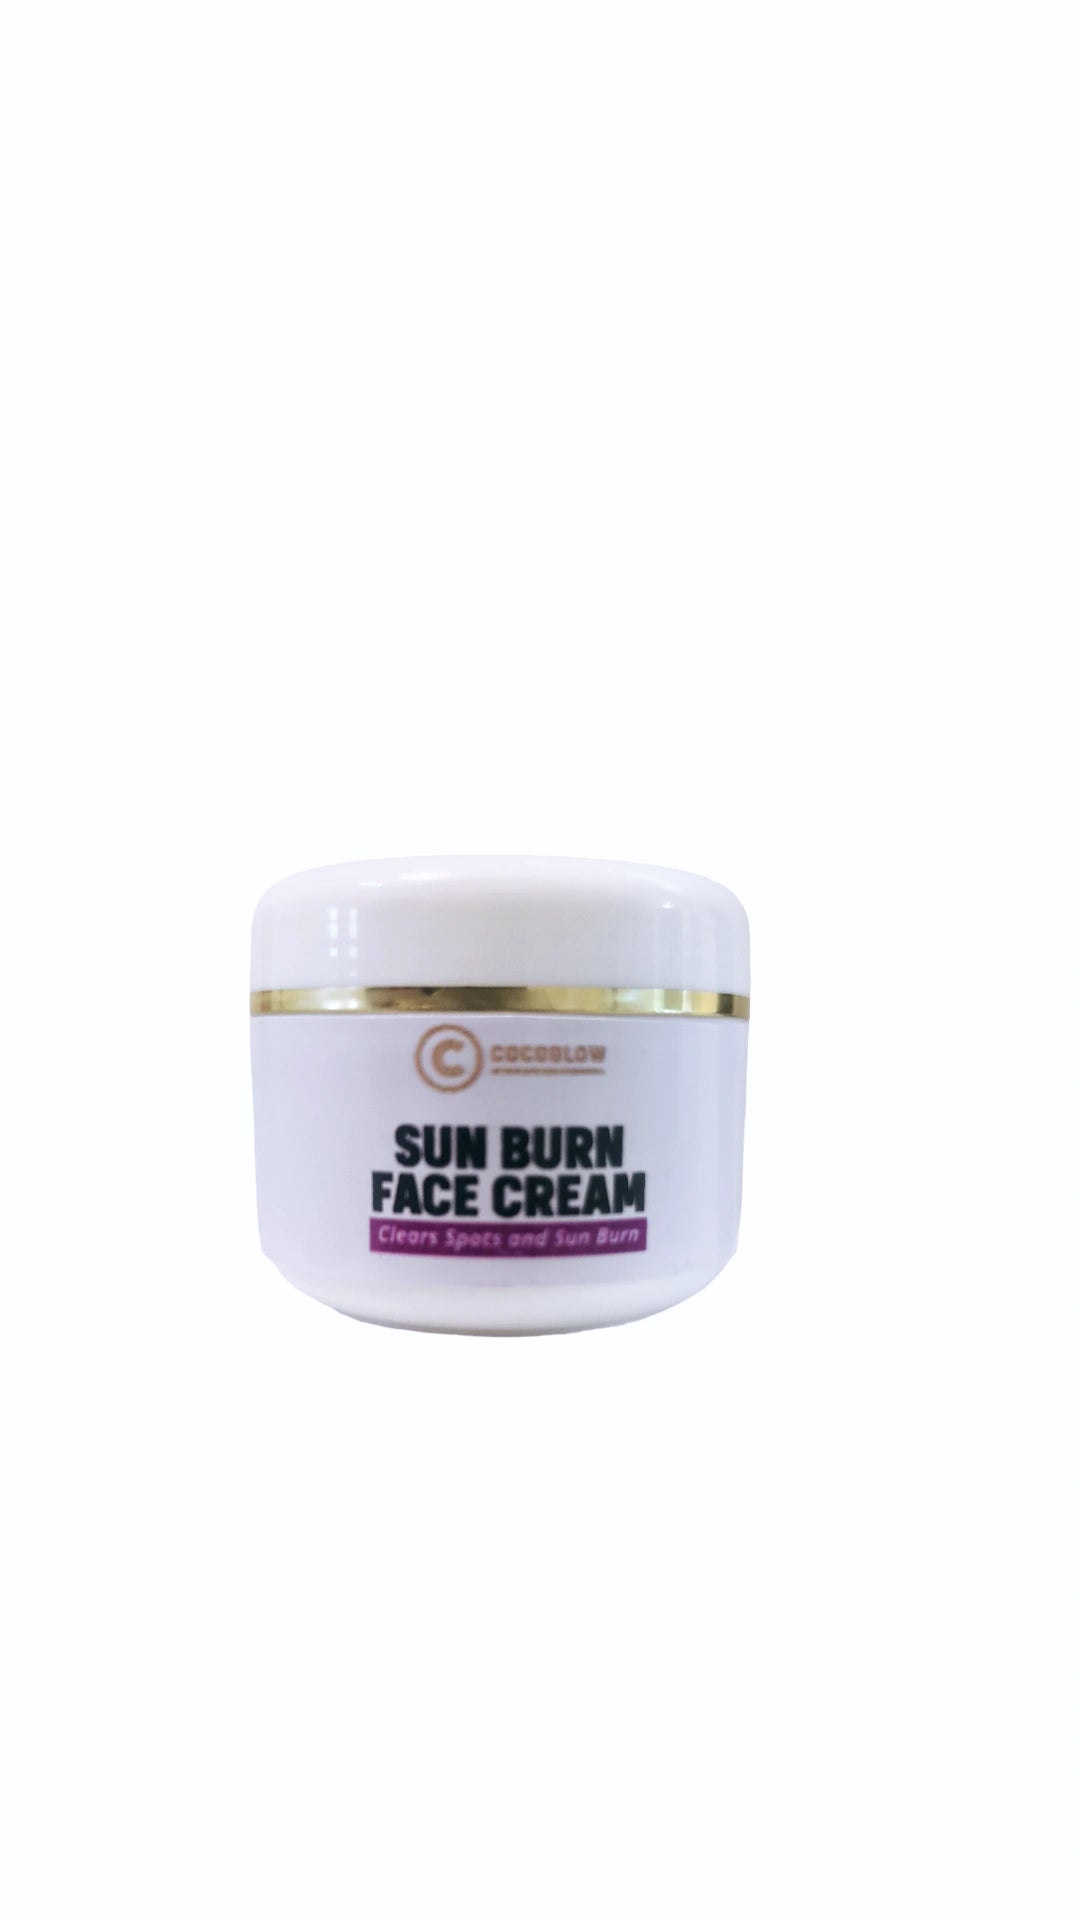 Sunburn face cream